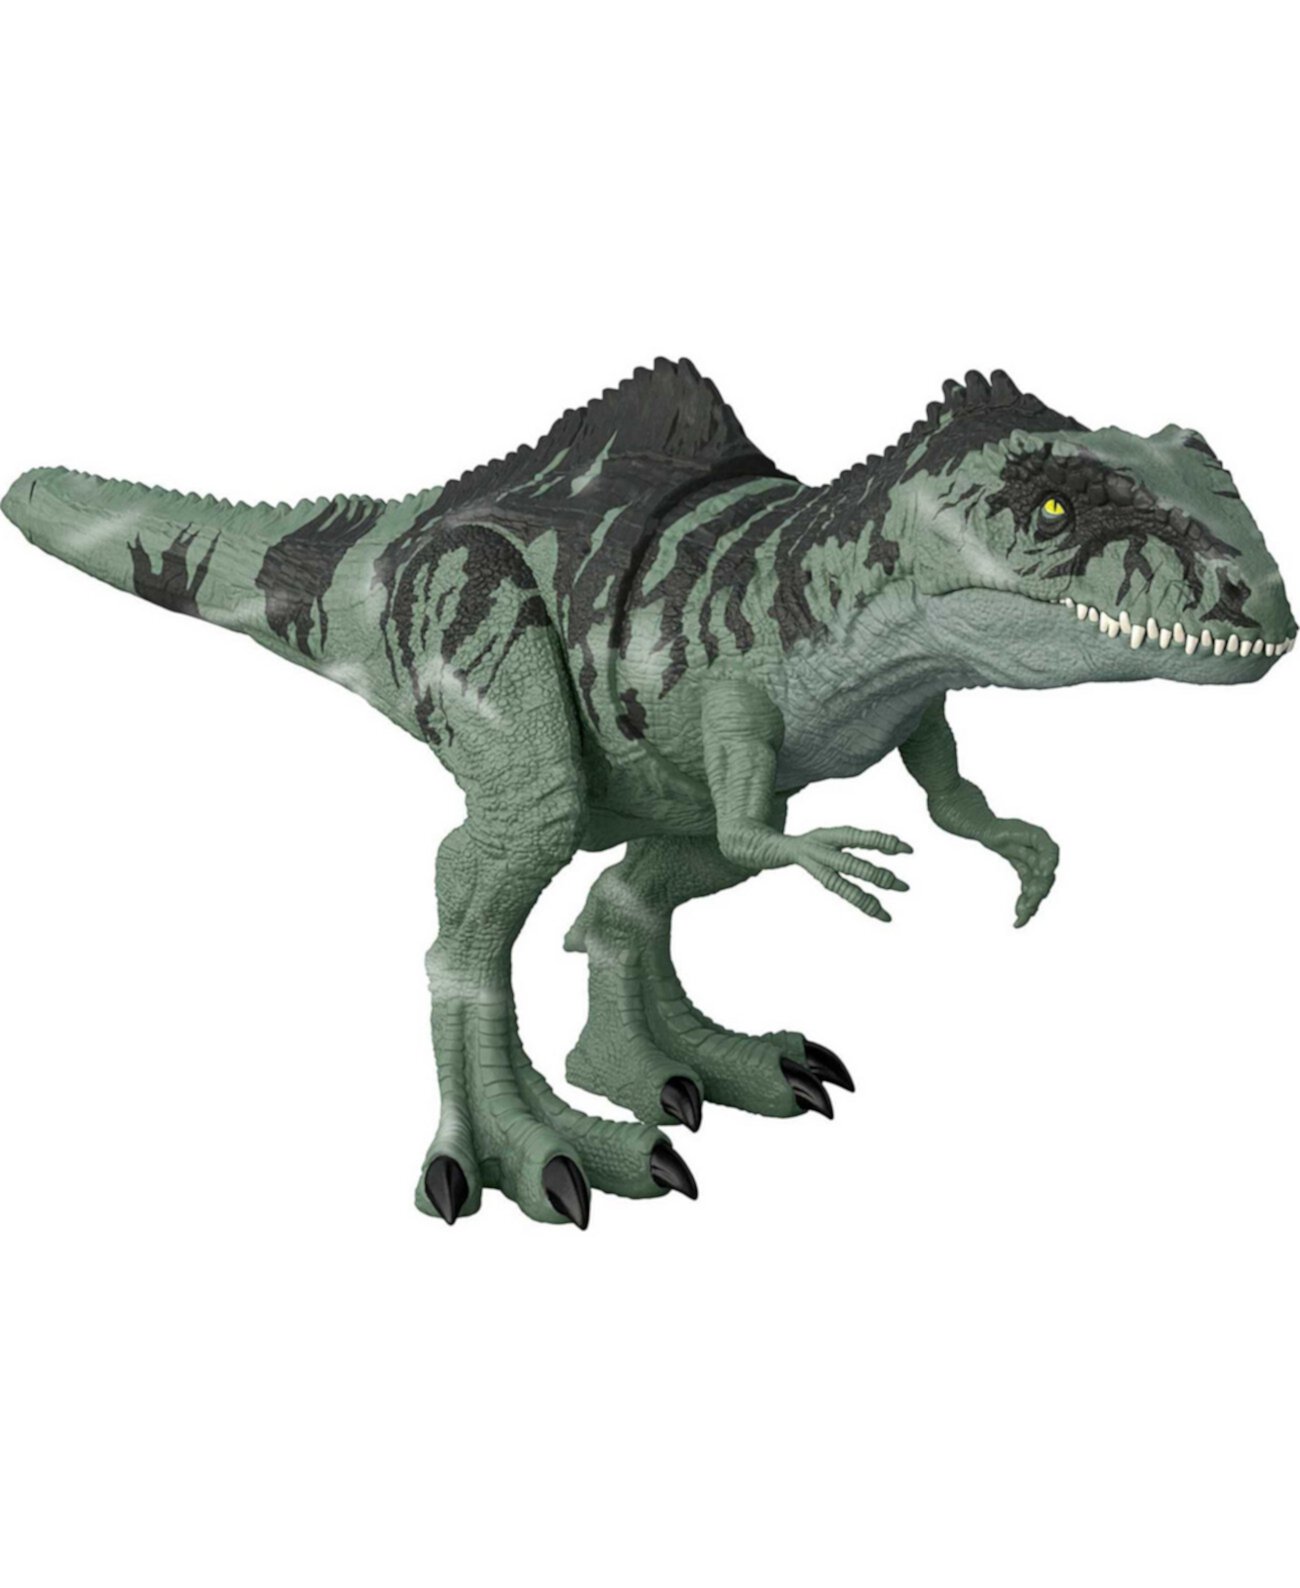 Strike N 'Roar Гигантский динозавр Jurassic World